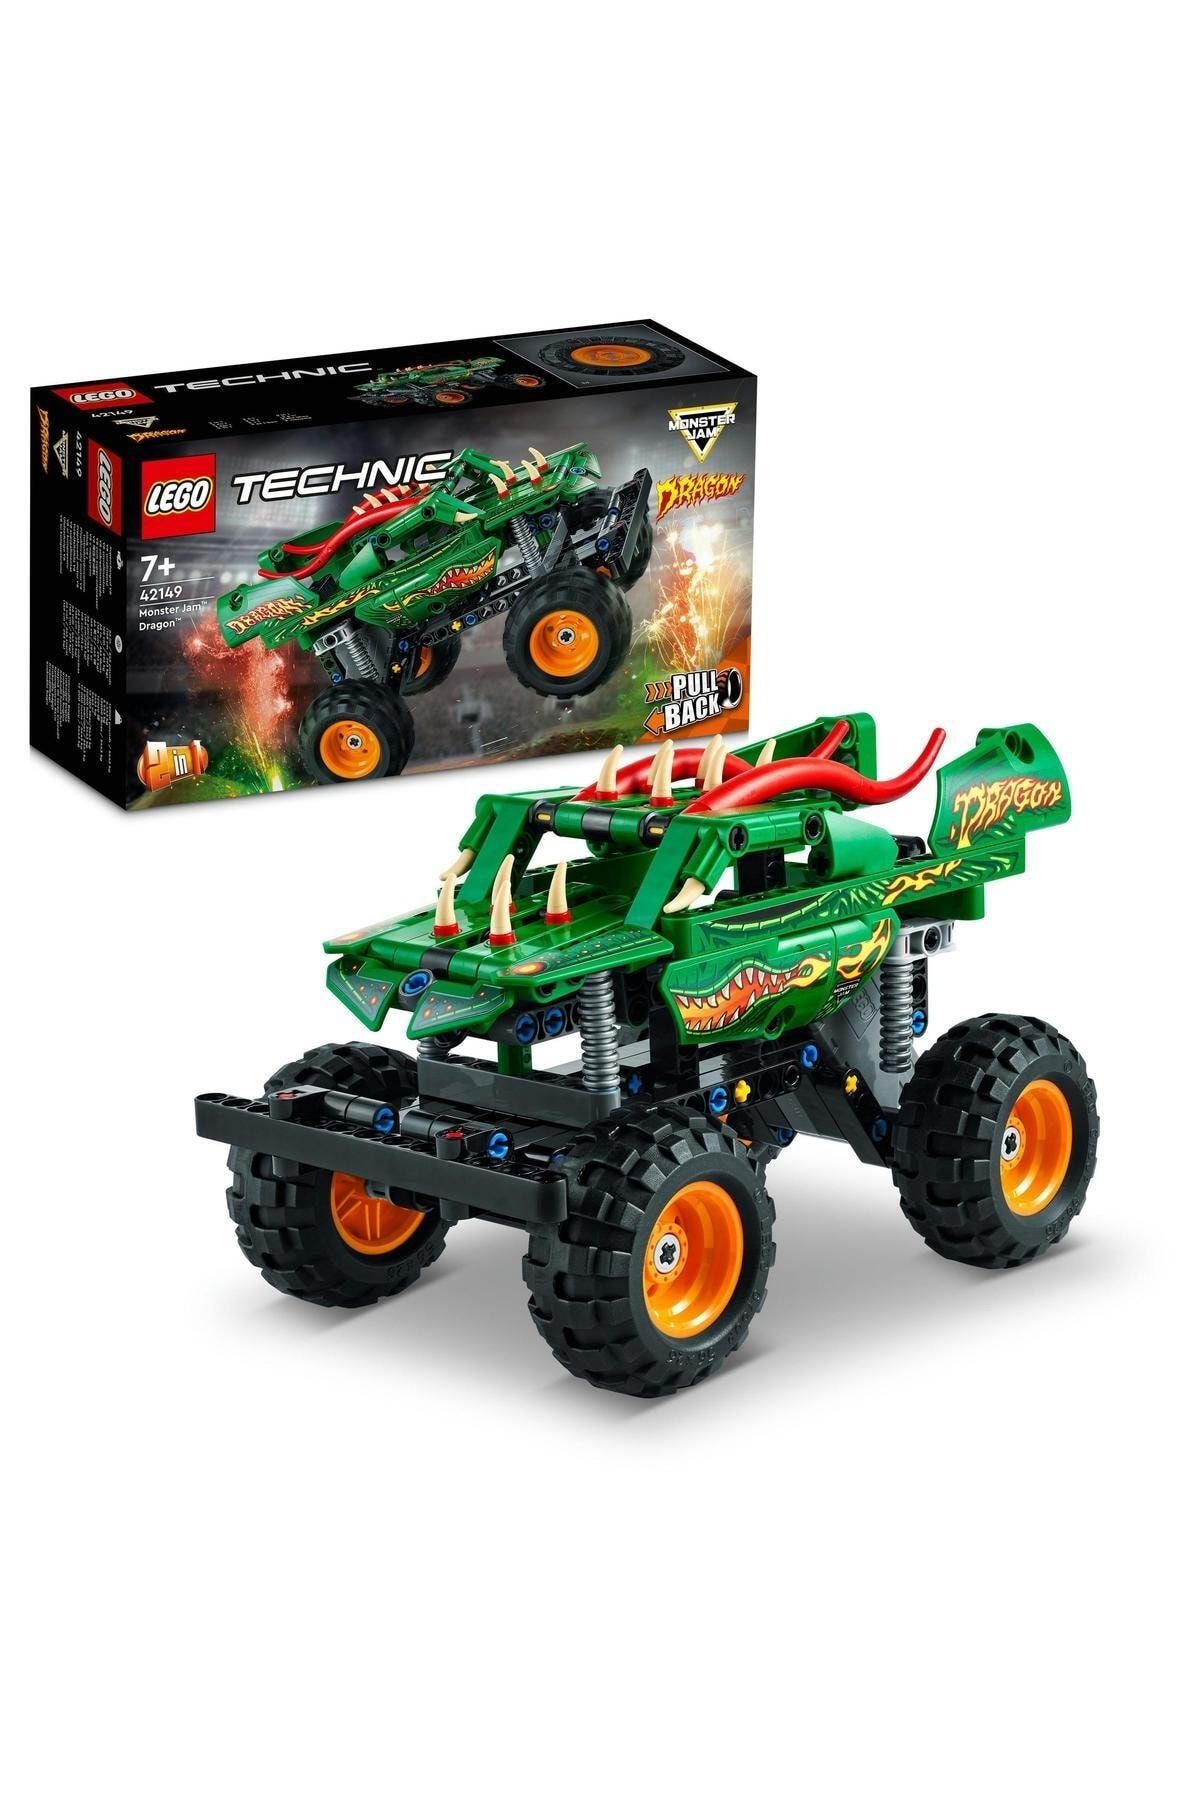 LEGO ® Technic Monster Jam™ Dragon™ 42149 - 7 Yaş ve Üzeri İçin Kamyon Yapım Seti(217 Parça)